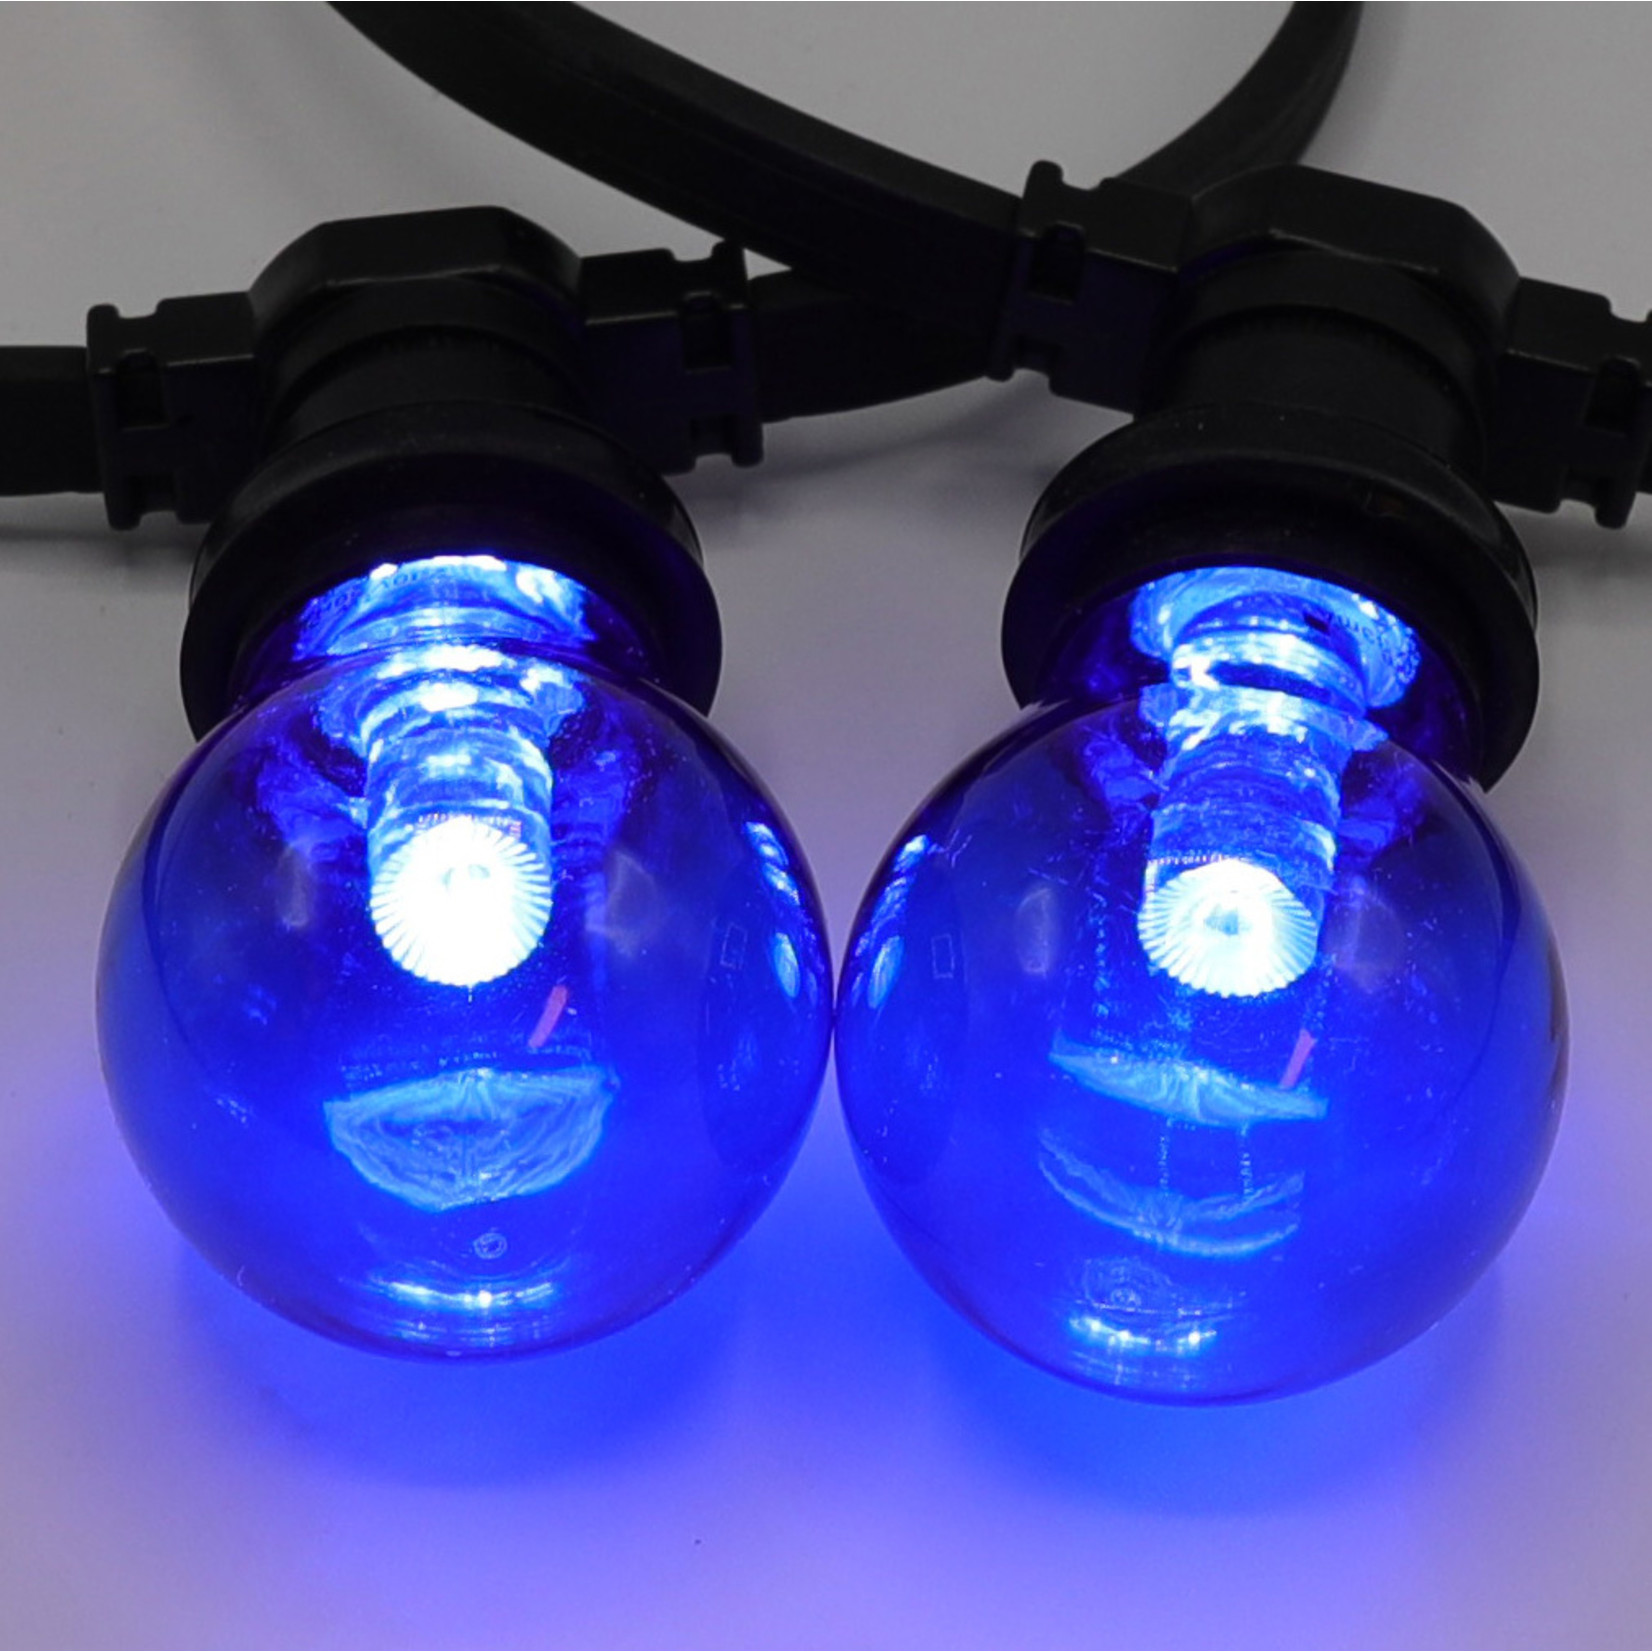 Encommium Op en neer gaan Vaarwel Blauw LED lamp met grote transparante kap - LumenXL bv